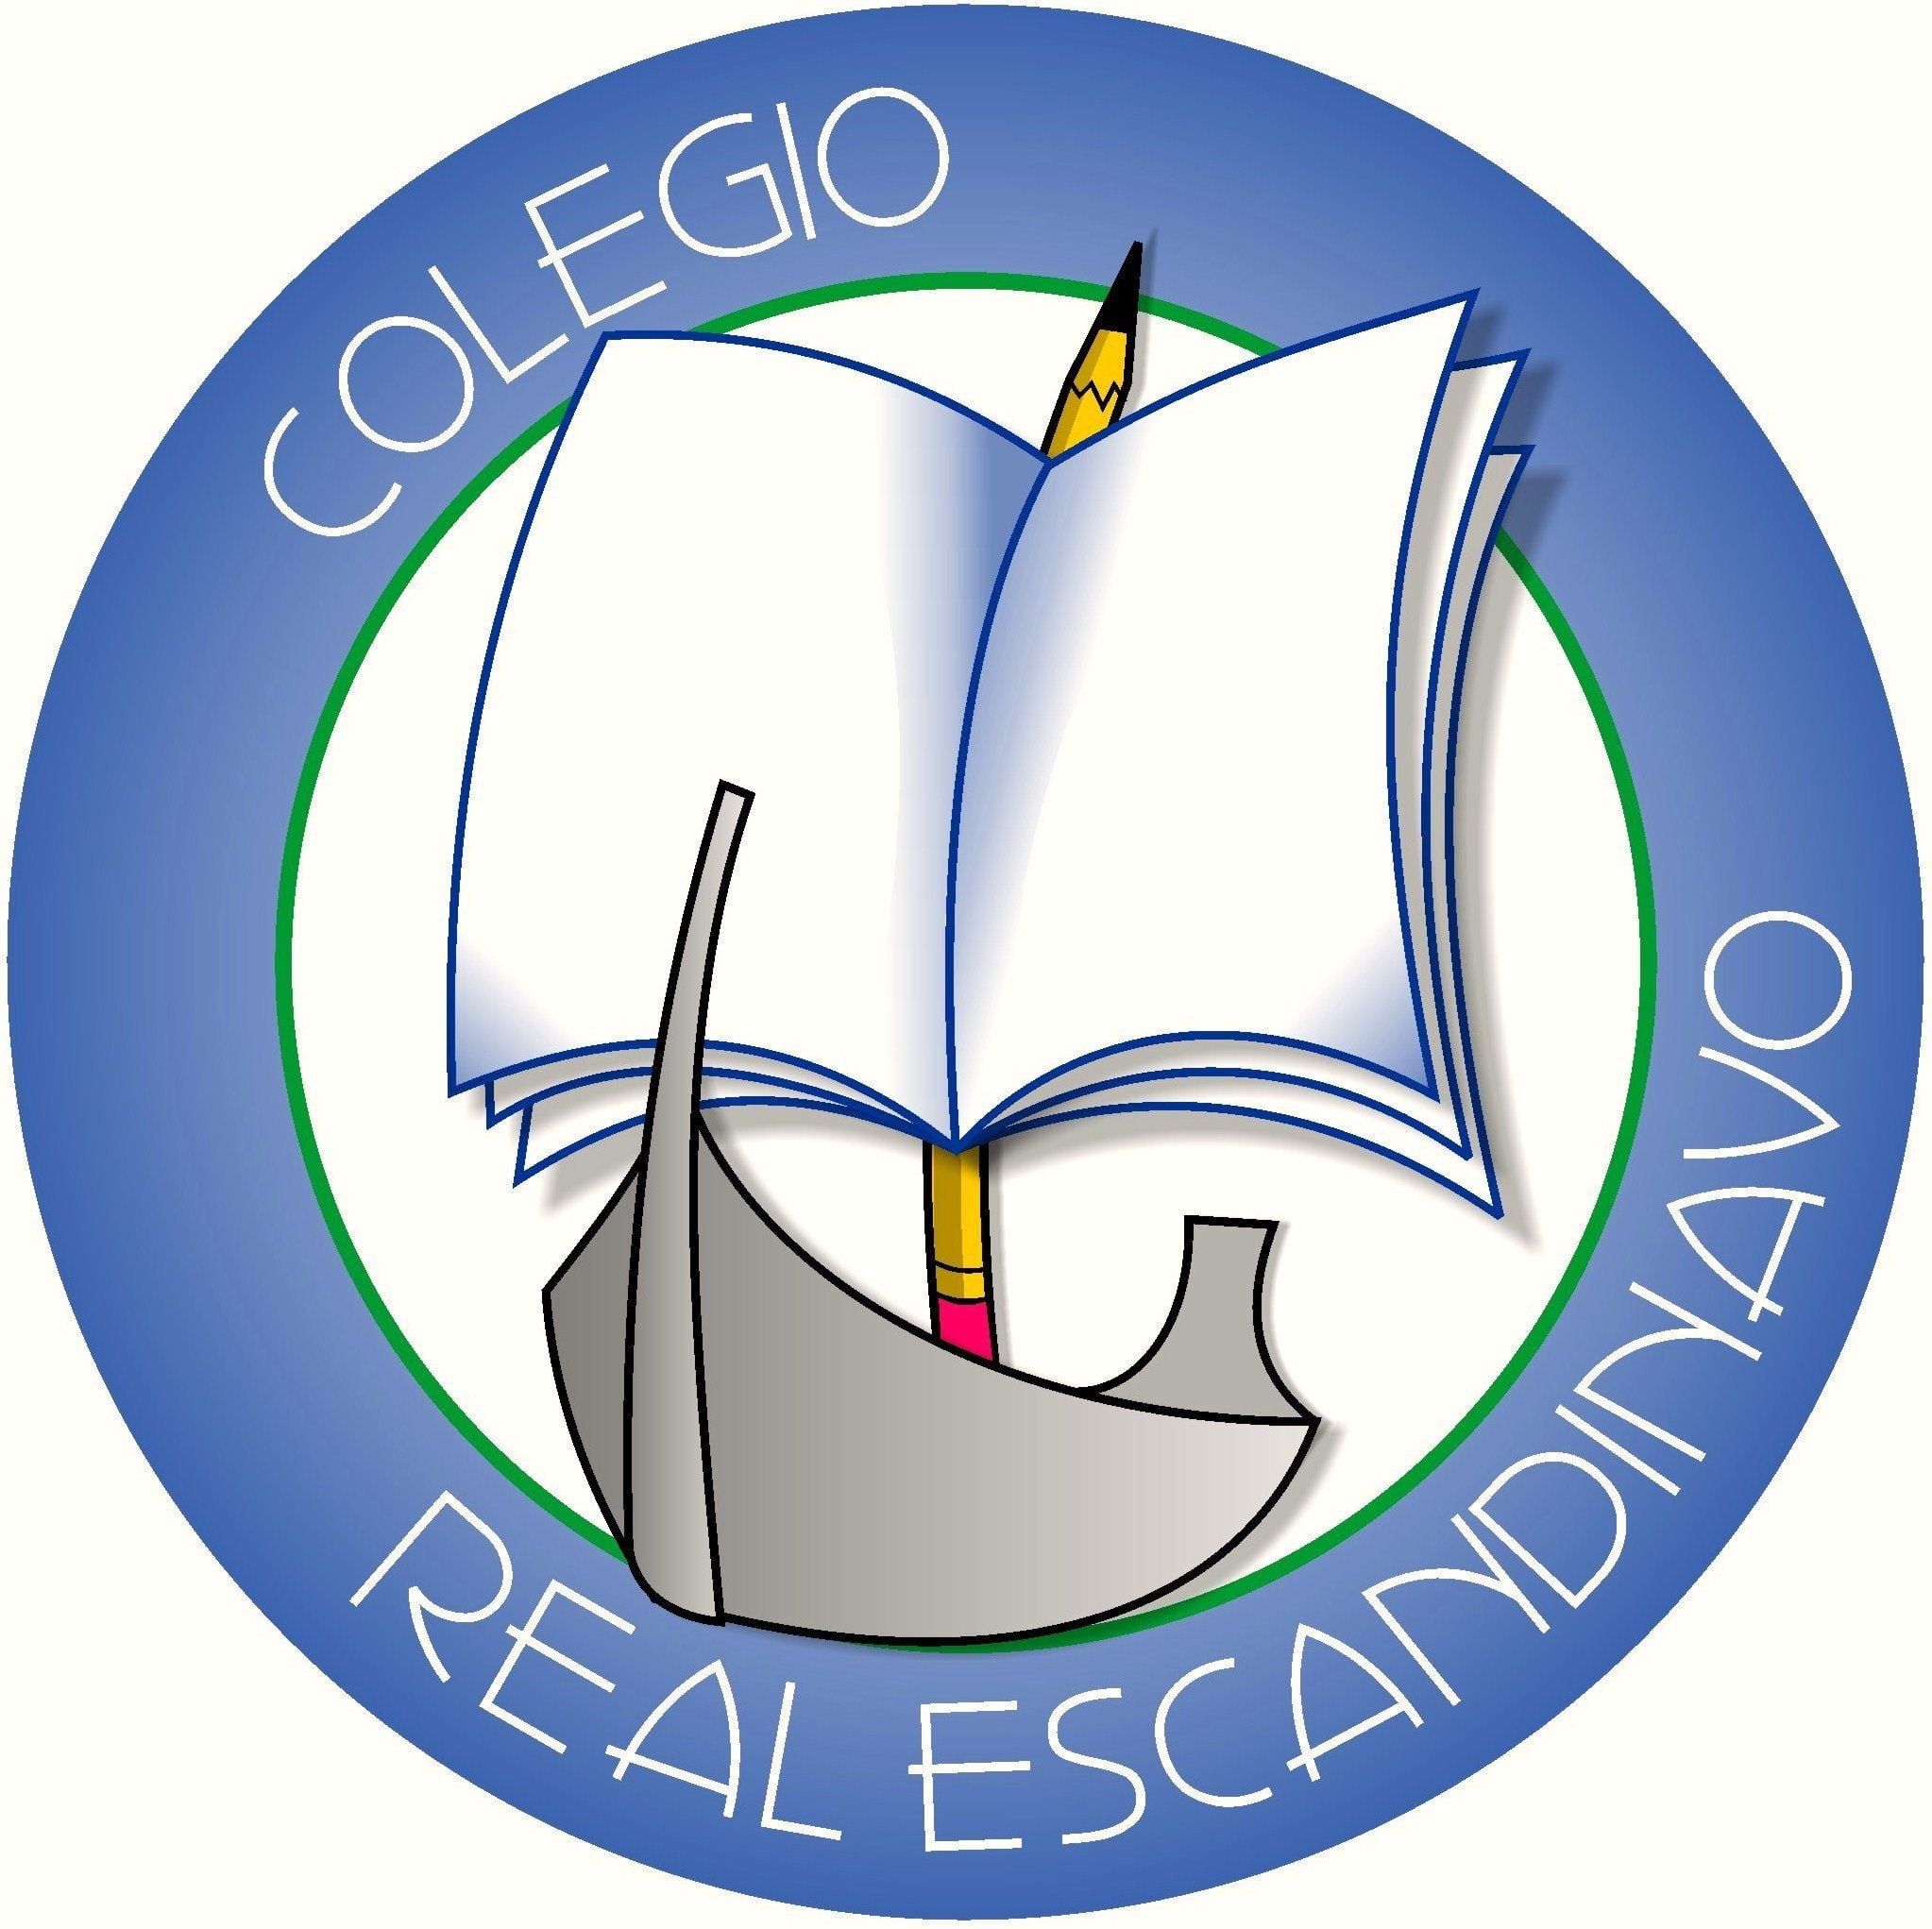 Colegio Real Escandinavo (Bogotá) Logo